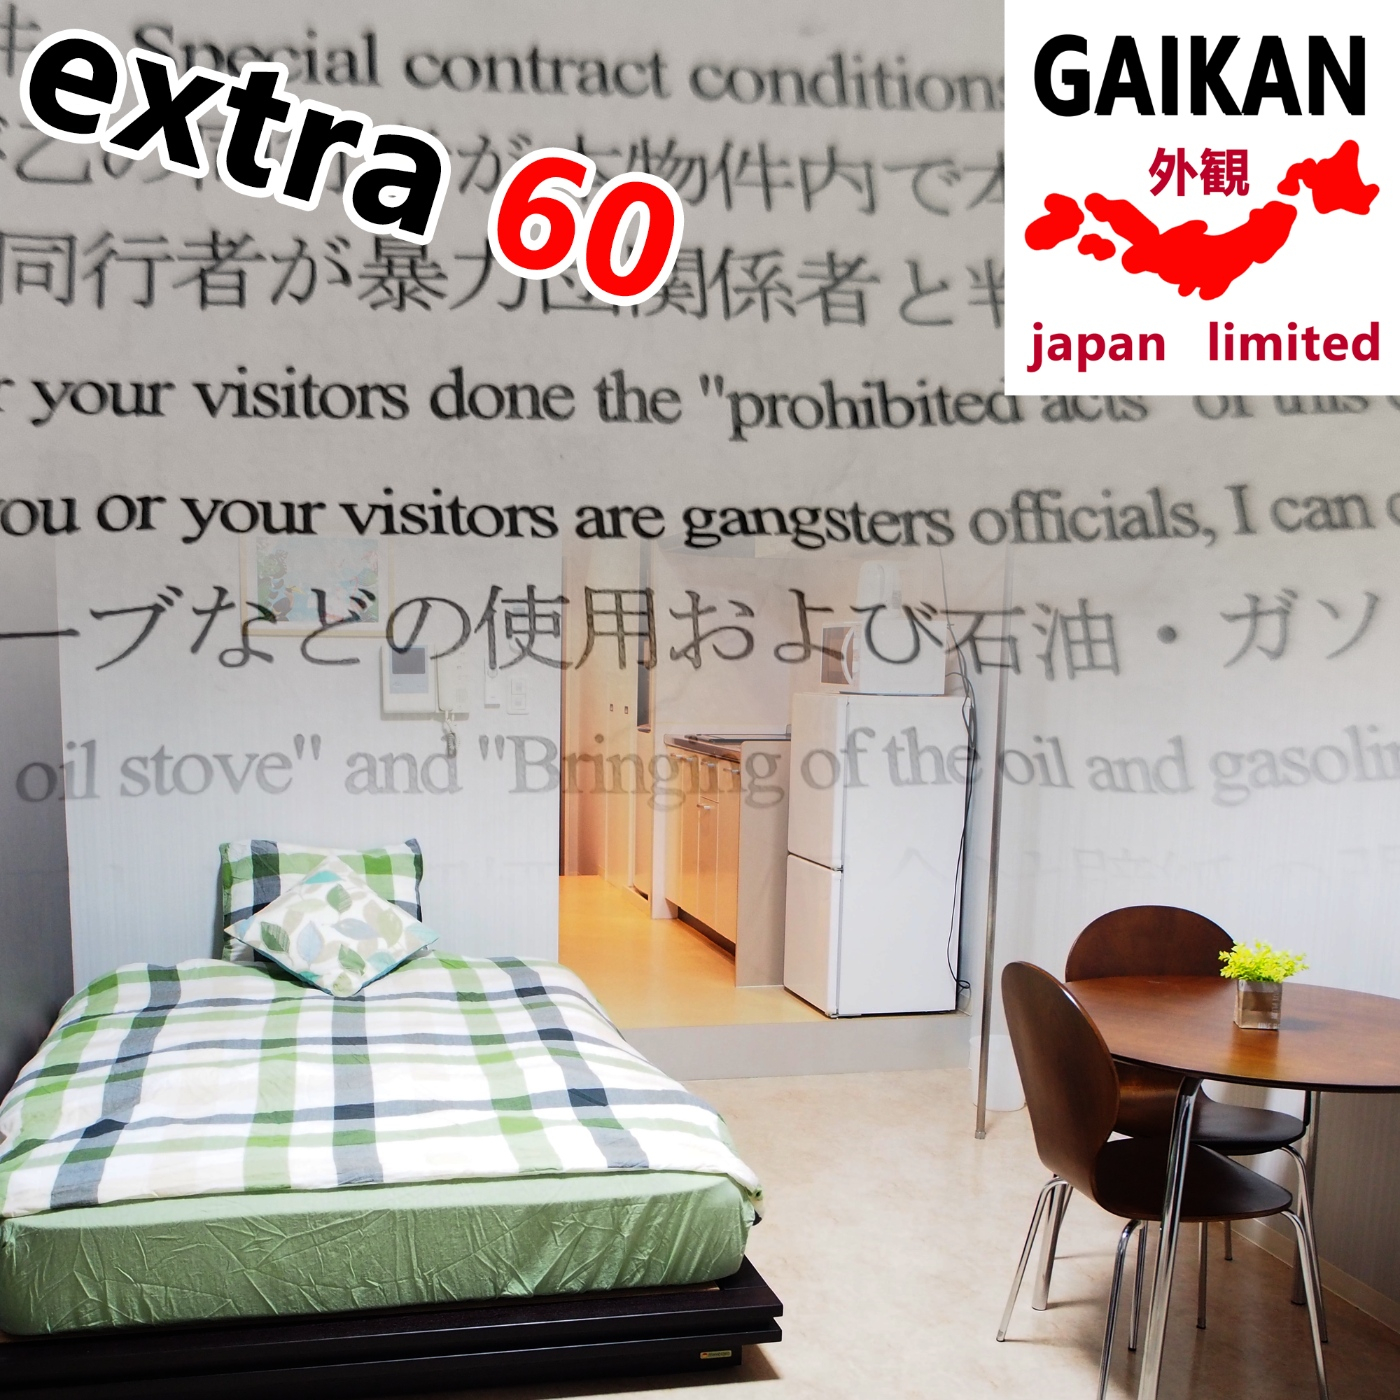 Extra 60 - Detalles para alquilar un apartamento o monthly mansion en Japón - Episodio exclusivo para mecenas